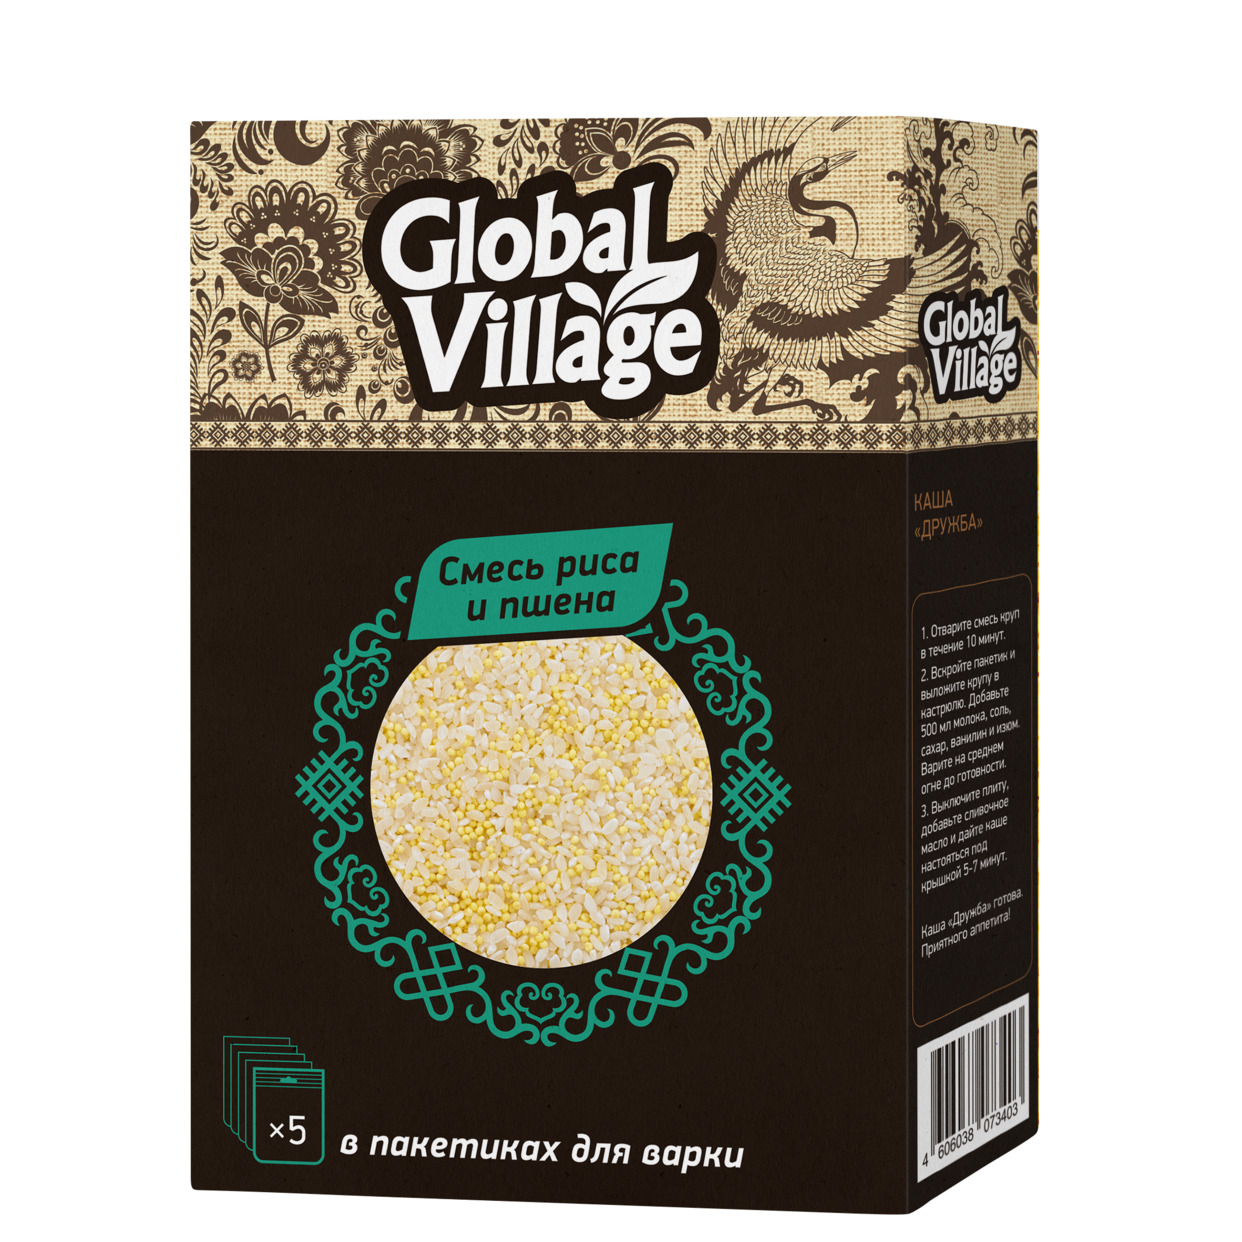 Крупа Смесь рис круглозерный и пшено шлифованное в пакетиках для варки Global Village 5*80 гр по акции в Пятерочке